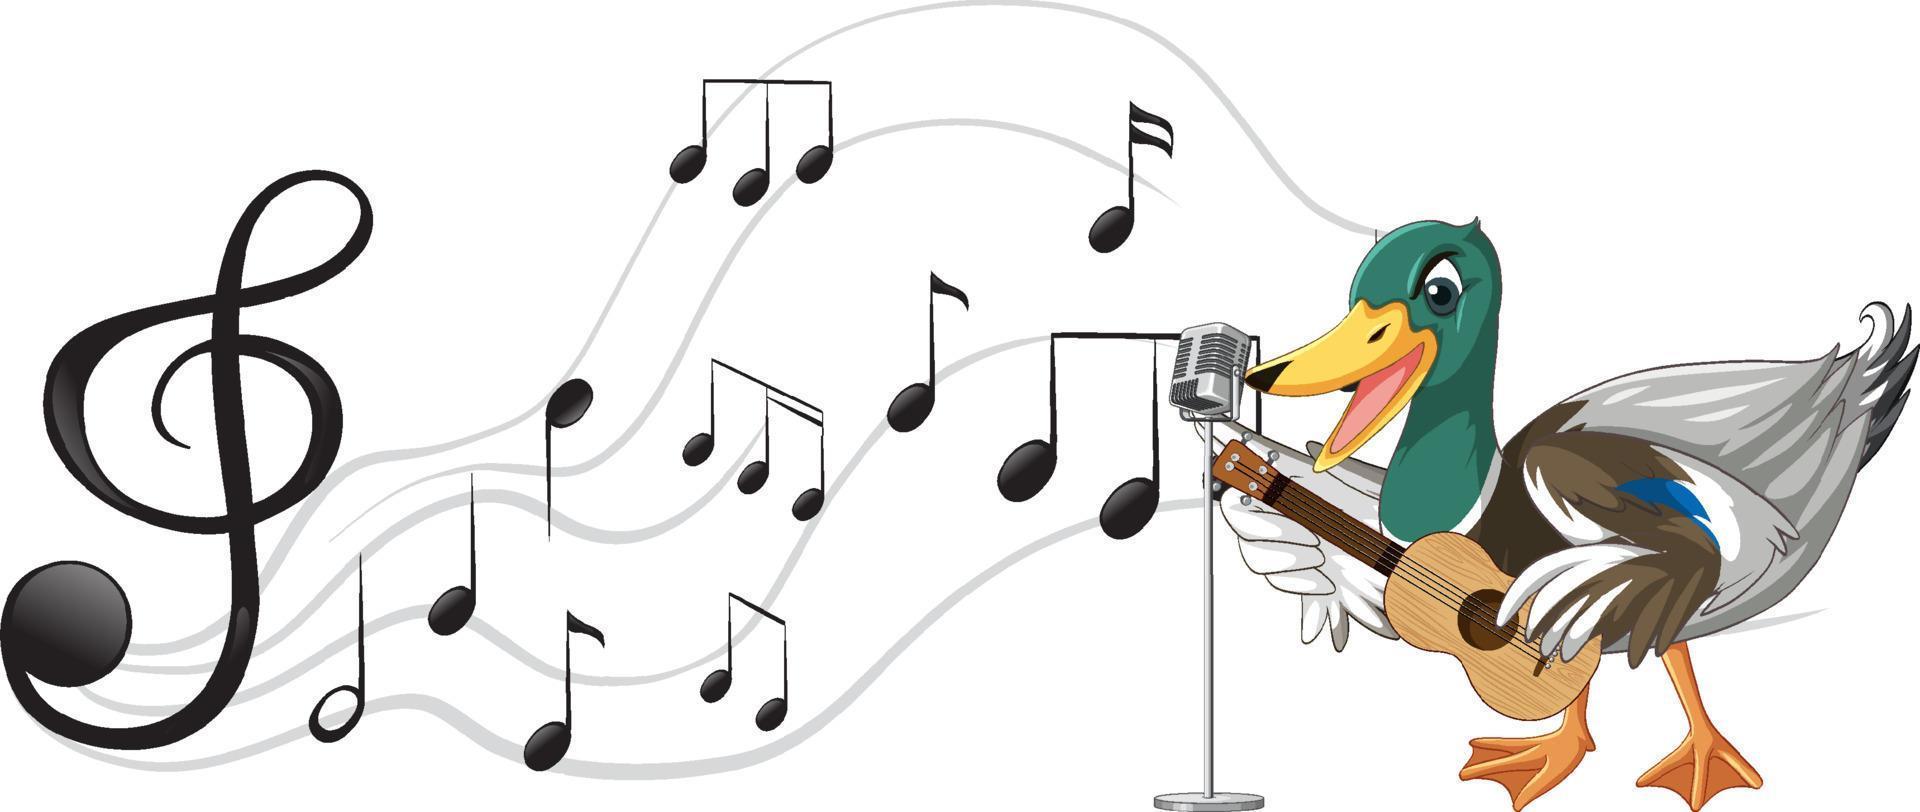 le canard joue de la guitare, ukulélé avec note de musique vecteur